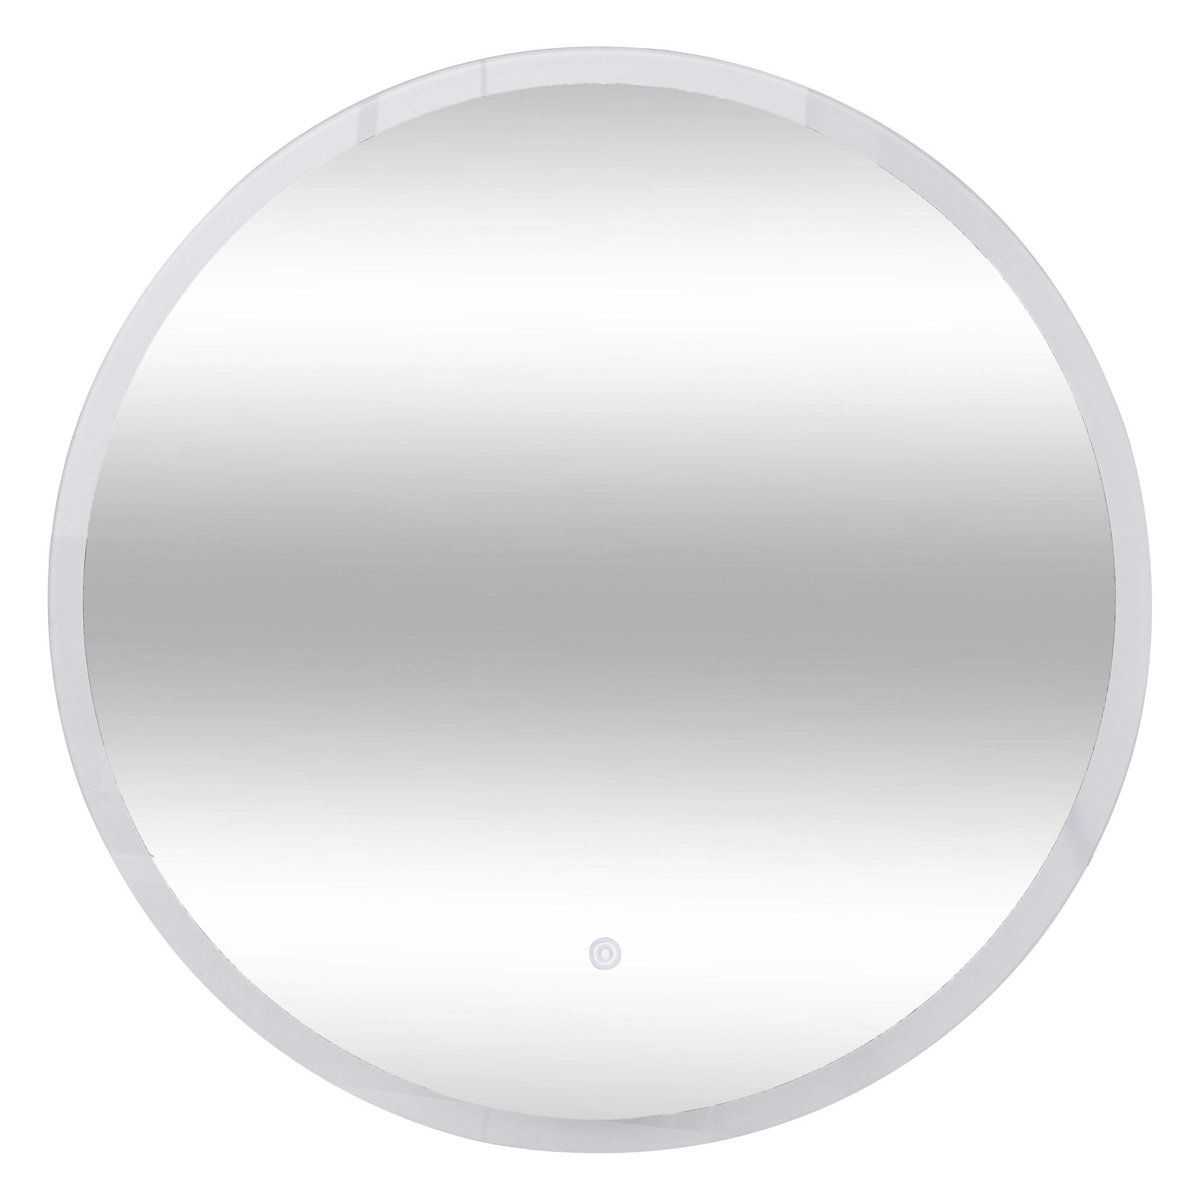 5five Simply Smart Koupelnové zrcadlo s LED osvětlením, kulaté, Ø 60 cm - EDAXO.CZ s.r.o.